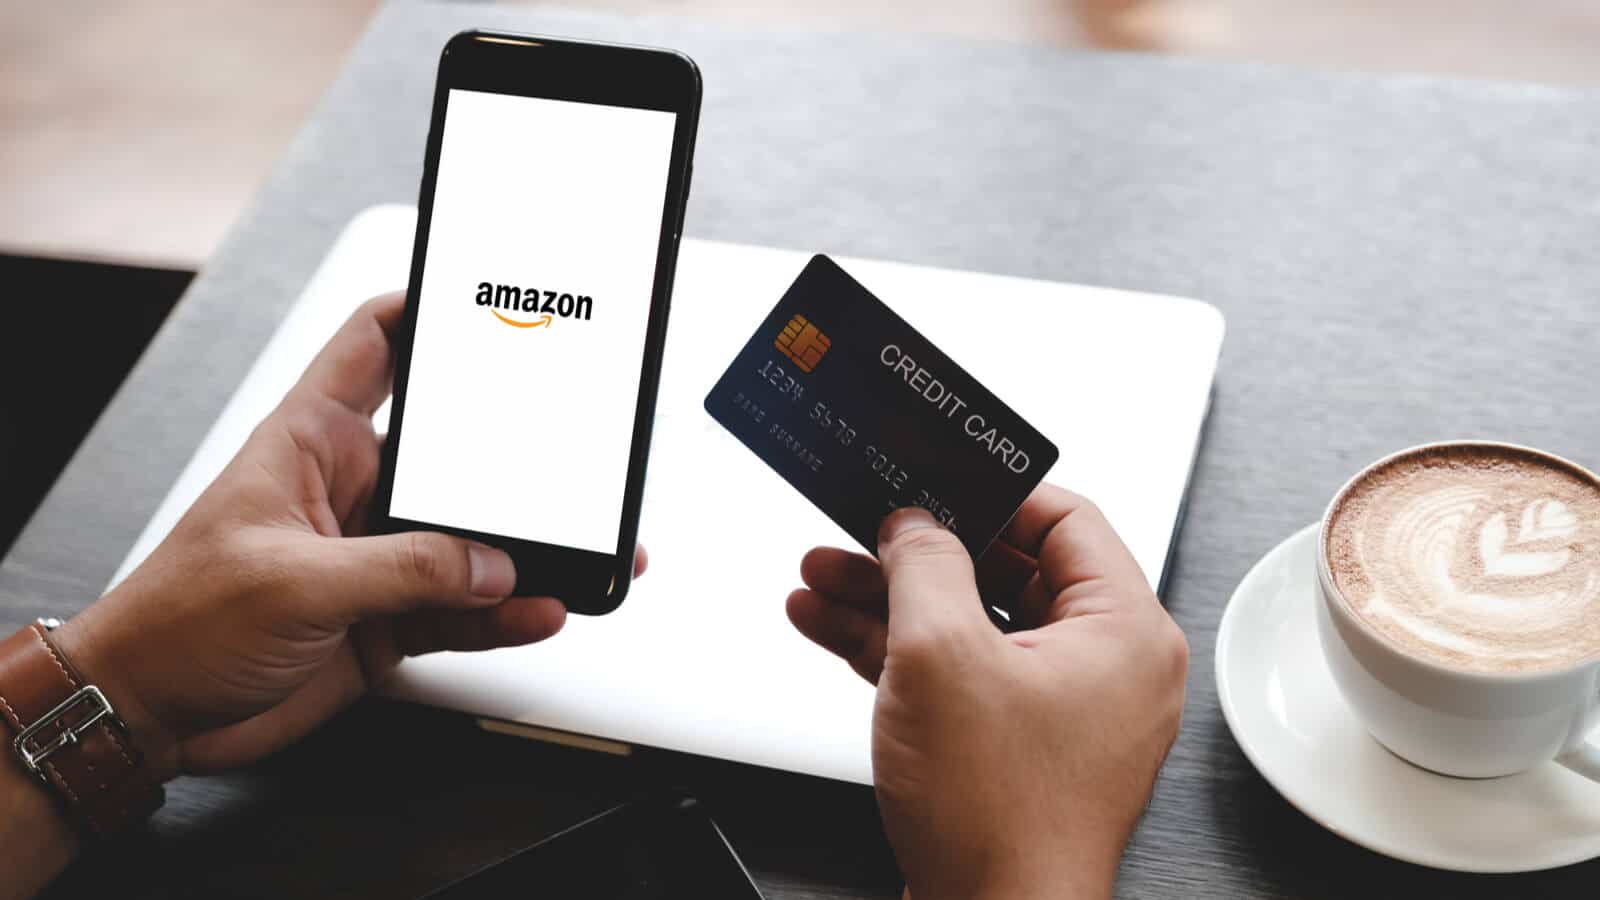 Mann an Smartphone, auf dem Amazon lädt, hat Kreditkarte in der Hand, um einen Black Friday und Cyber Monday Deal zu ergattern